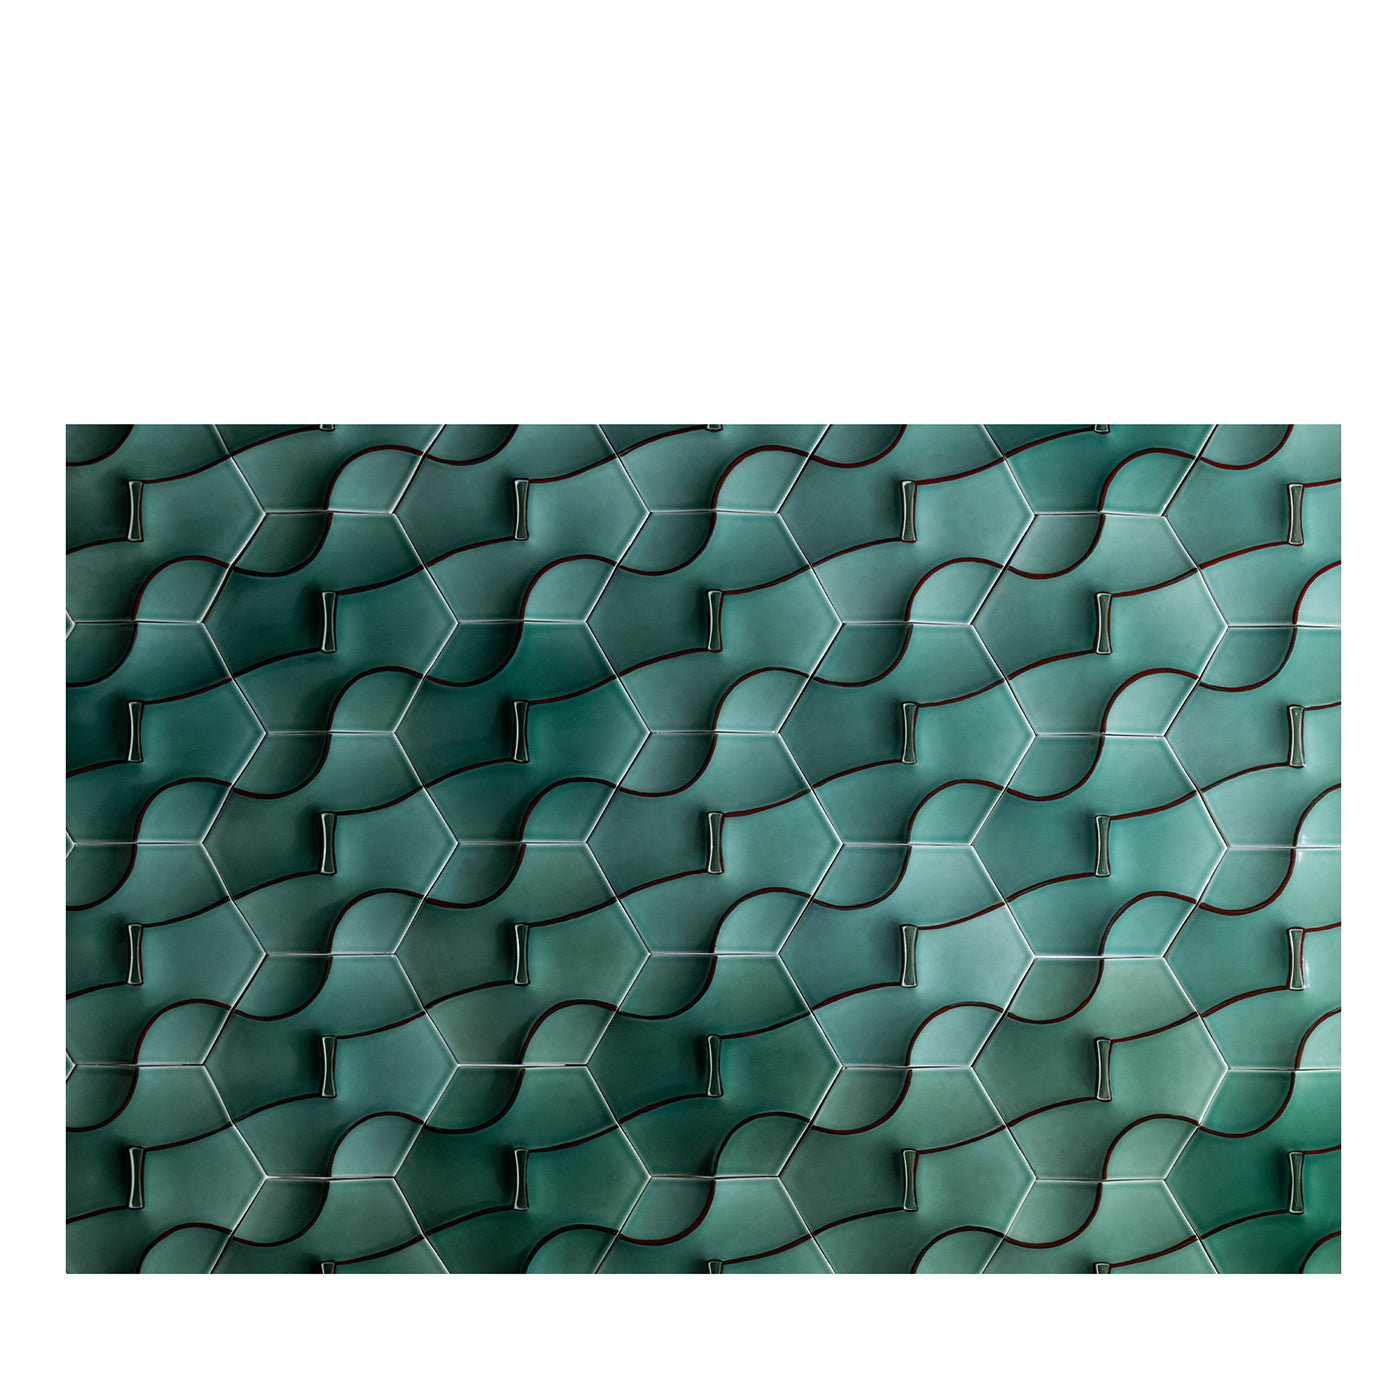 CADENZA Tiles by Kejun Li #2 - Vue principale